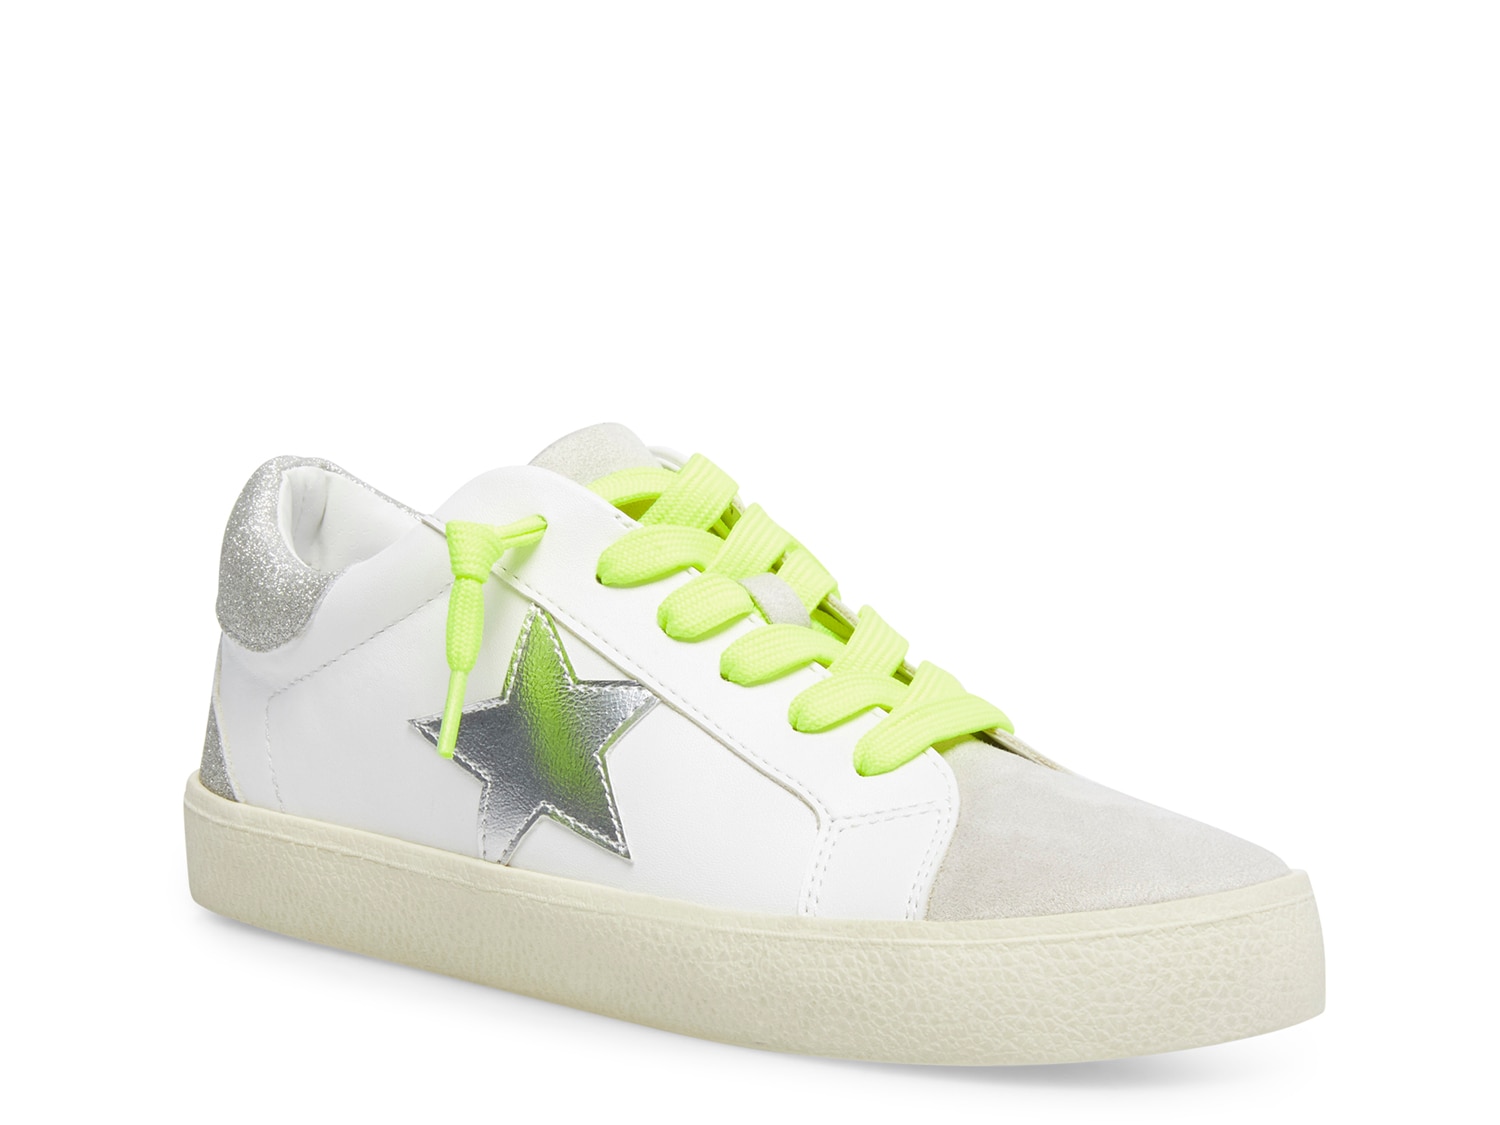 steve madden lime green shoes